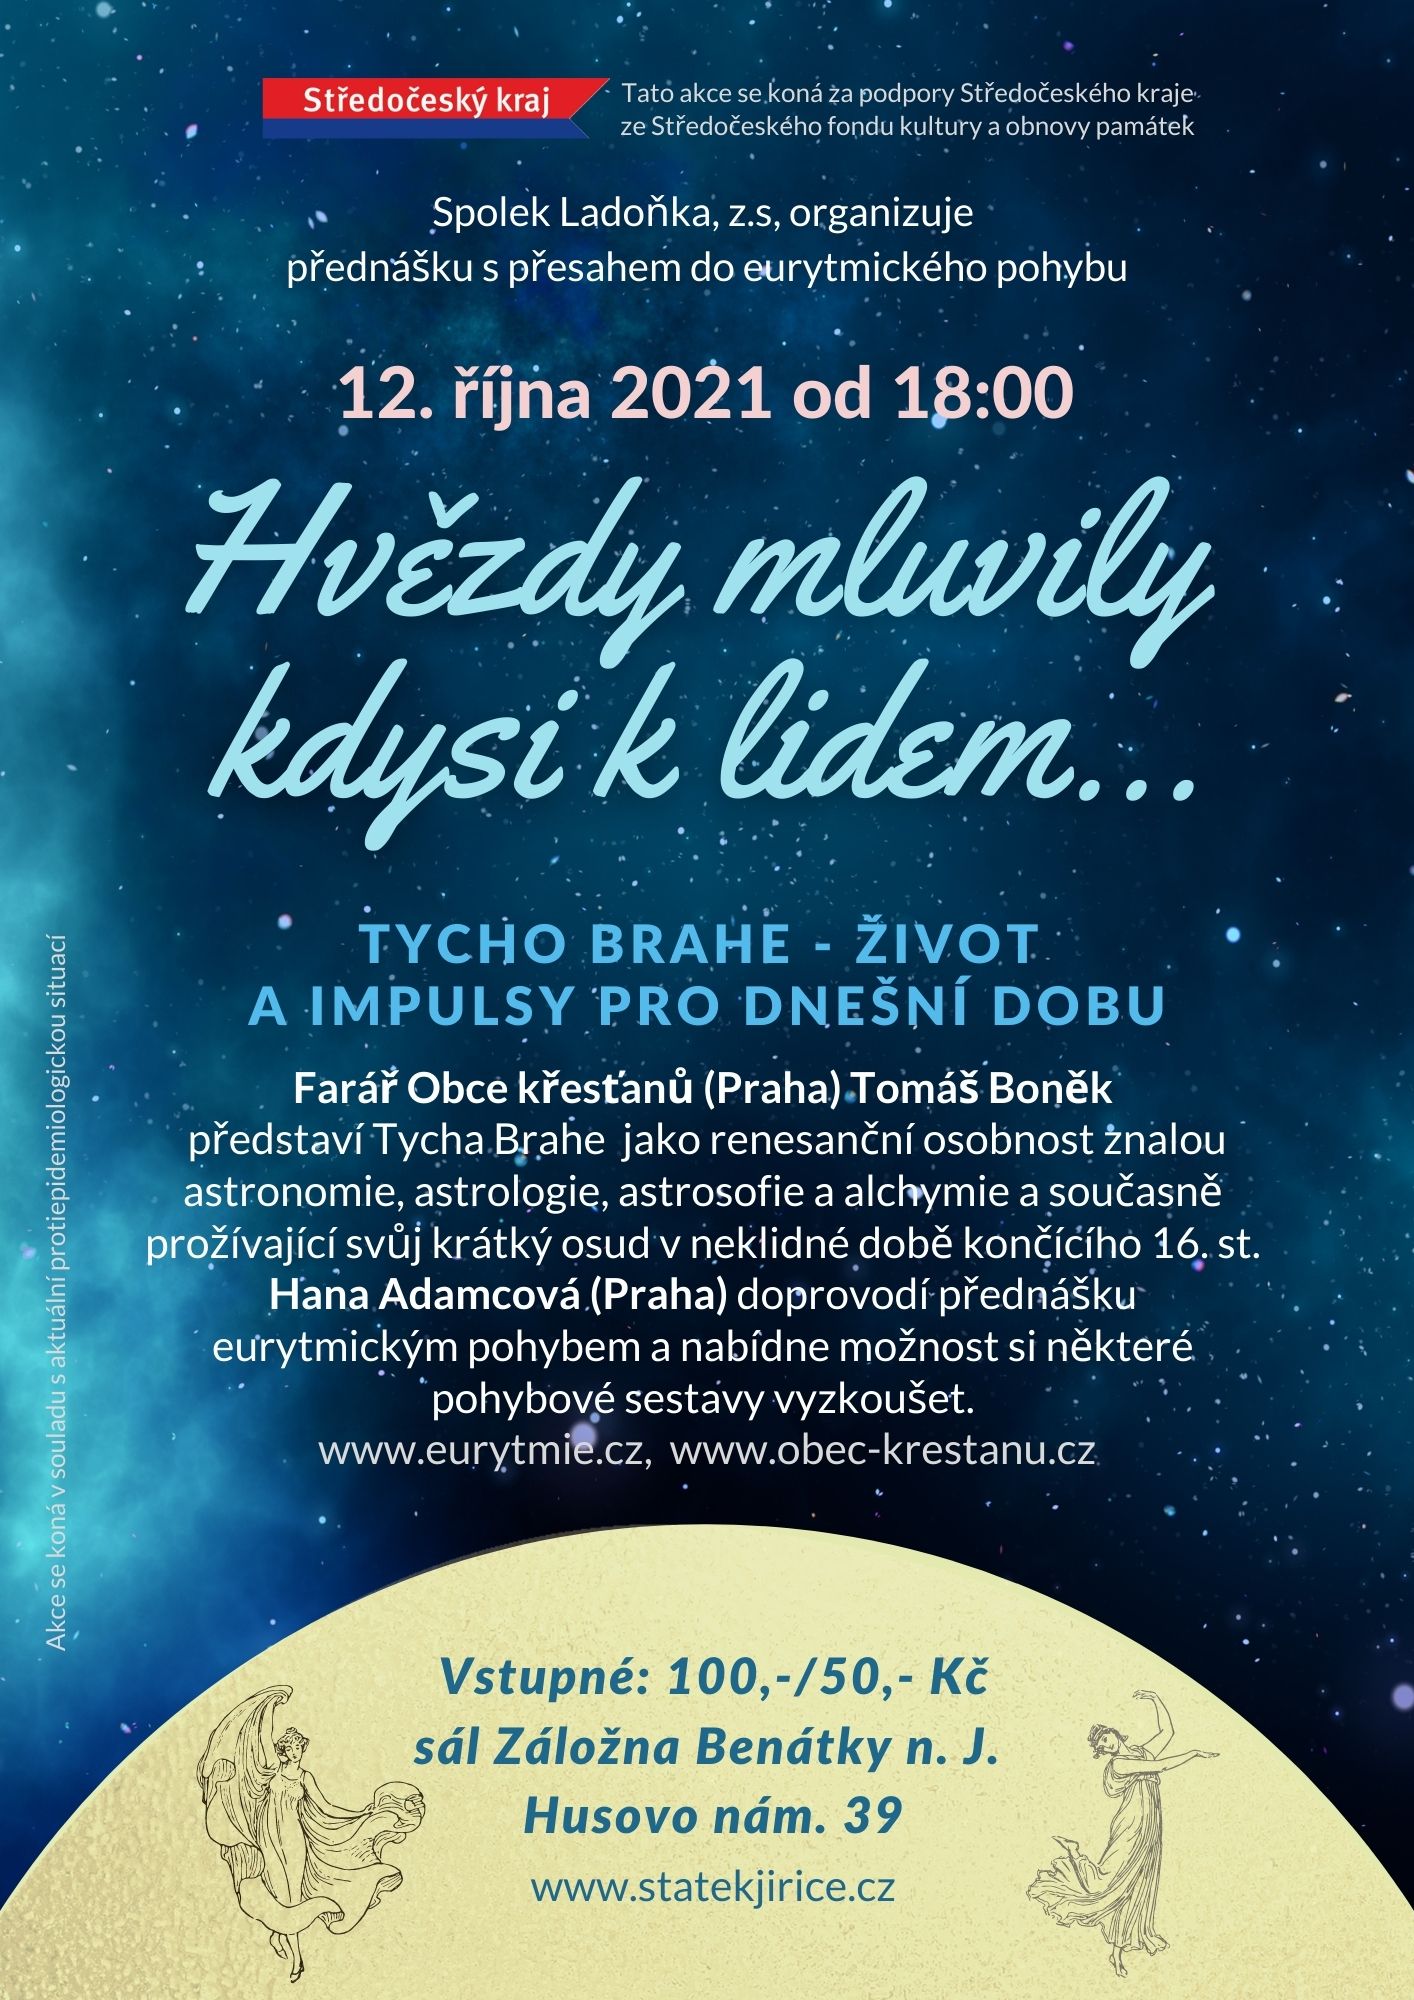 Pozvánka na přednášku Tycho Brahe